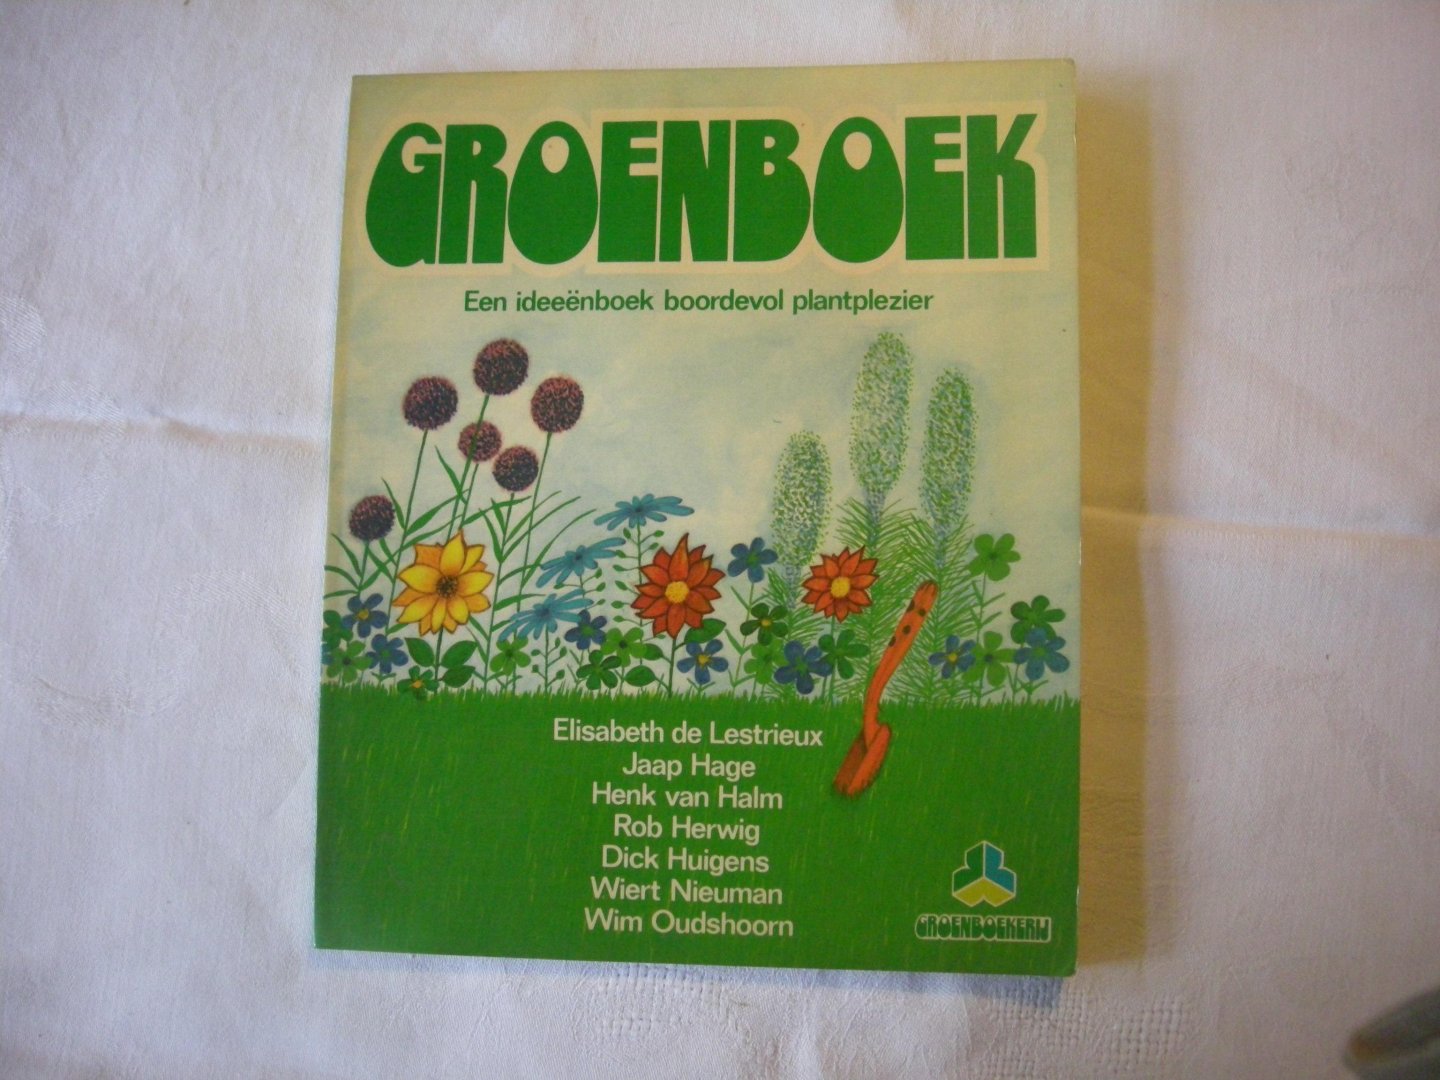 Lestrieux, E. de, Hage,J., Herwig R., e.a. - Groenboek. Een ideeenboek boordevol plantplezier